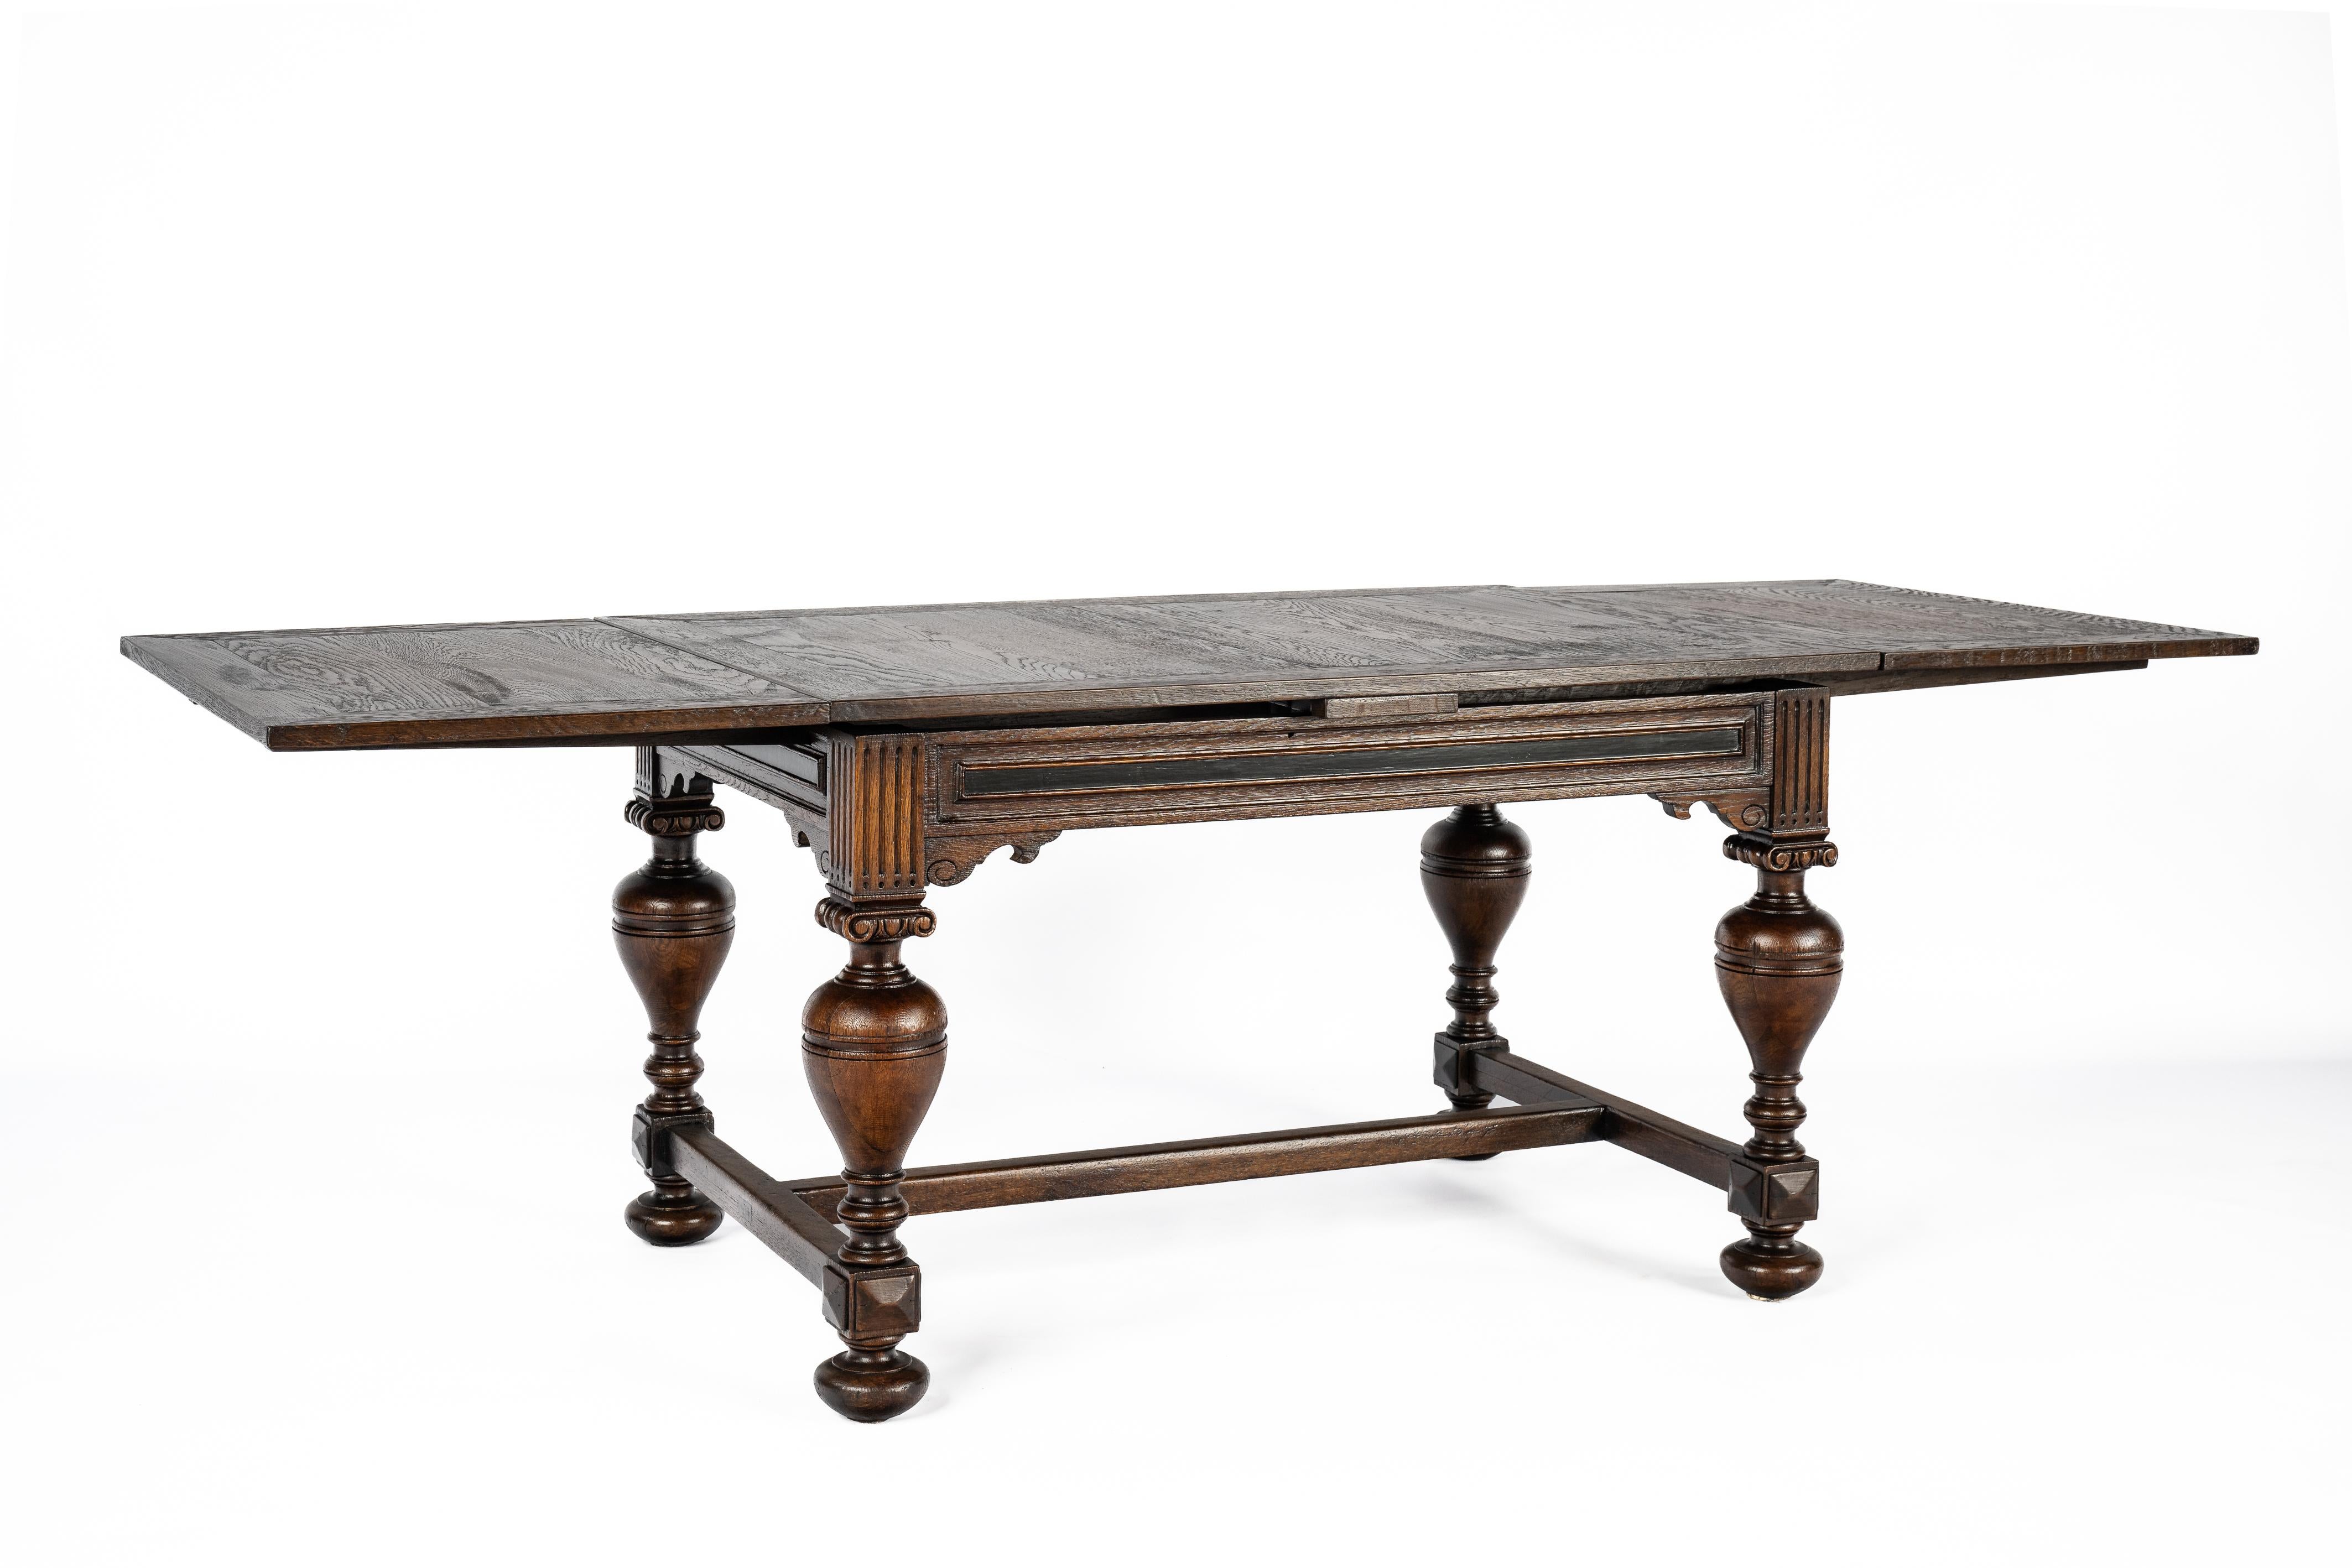 Nous vous proposons ici une superbe table méticuleusement fabriquée aux Pays-Bas vers 1900 à partir du plus beau chêne d'été européen. Cette pièce exquise présente les caractéristiques d'une table typique de la Renaissance hollandaise, avec des